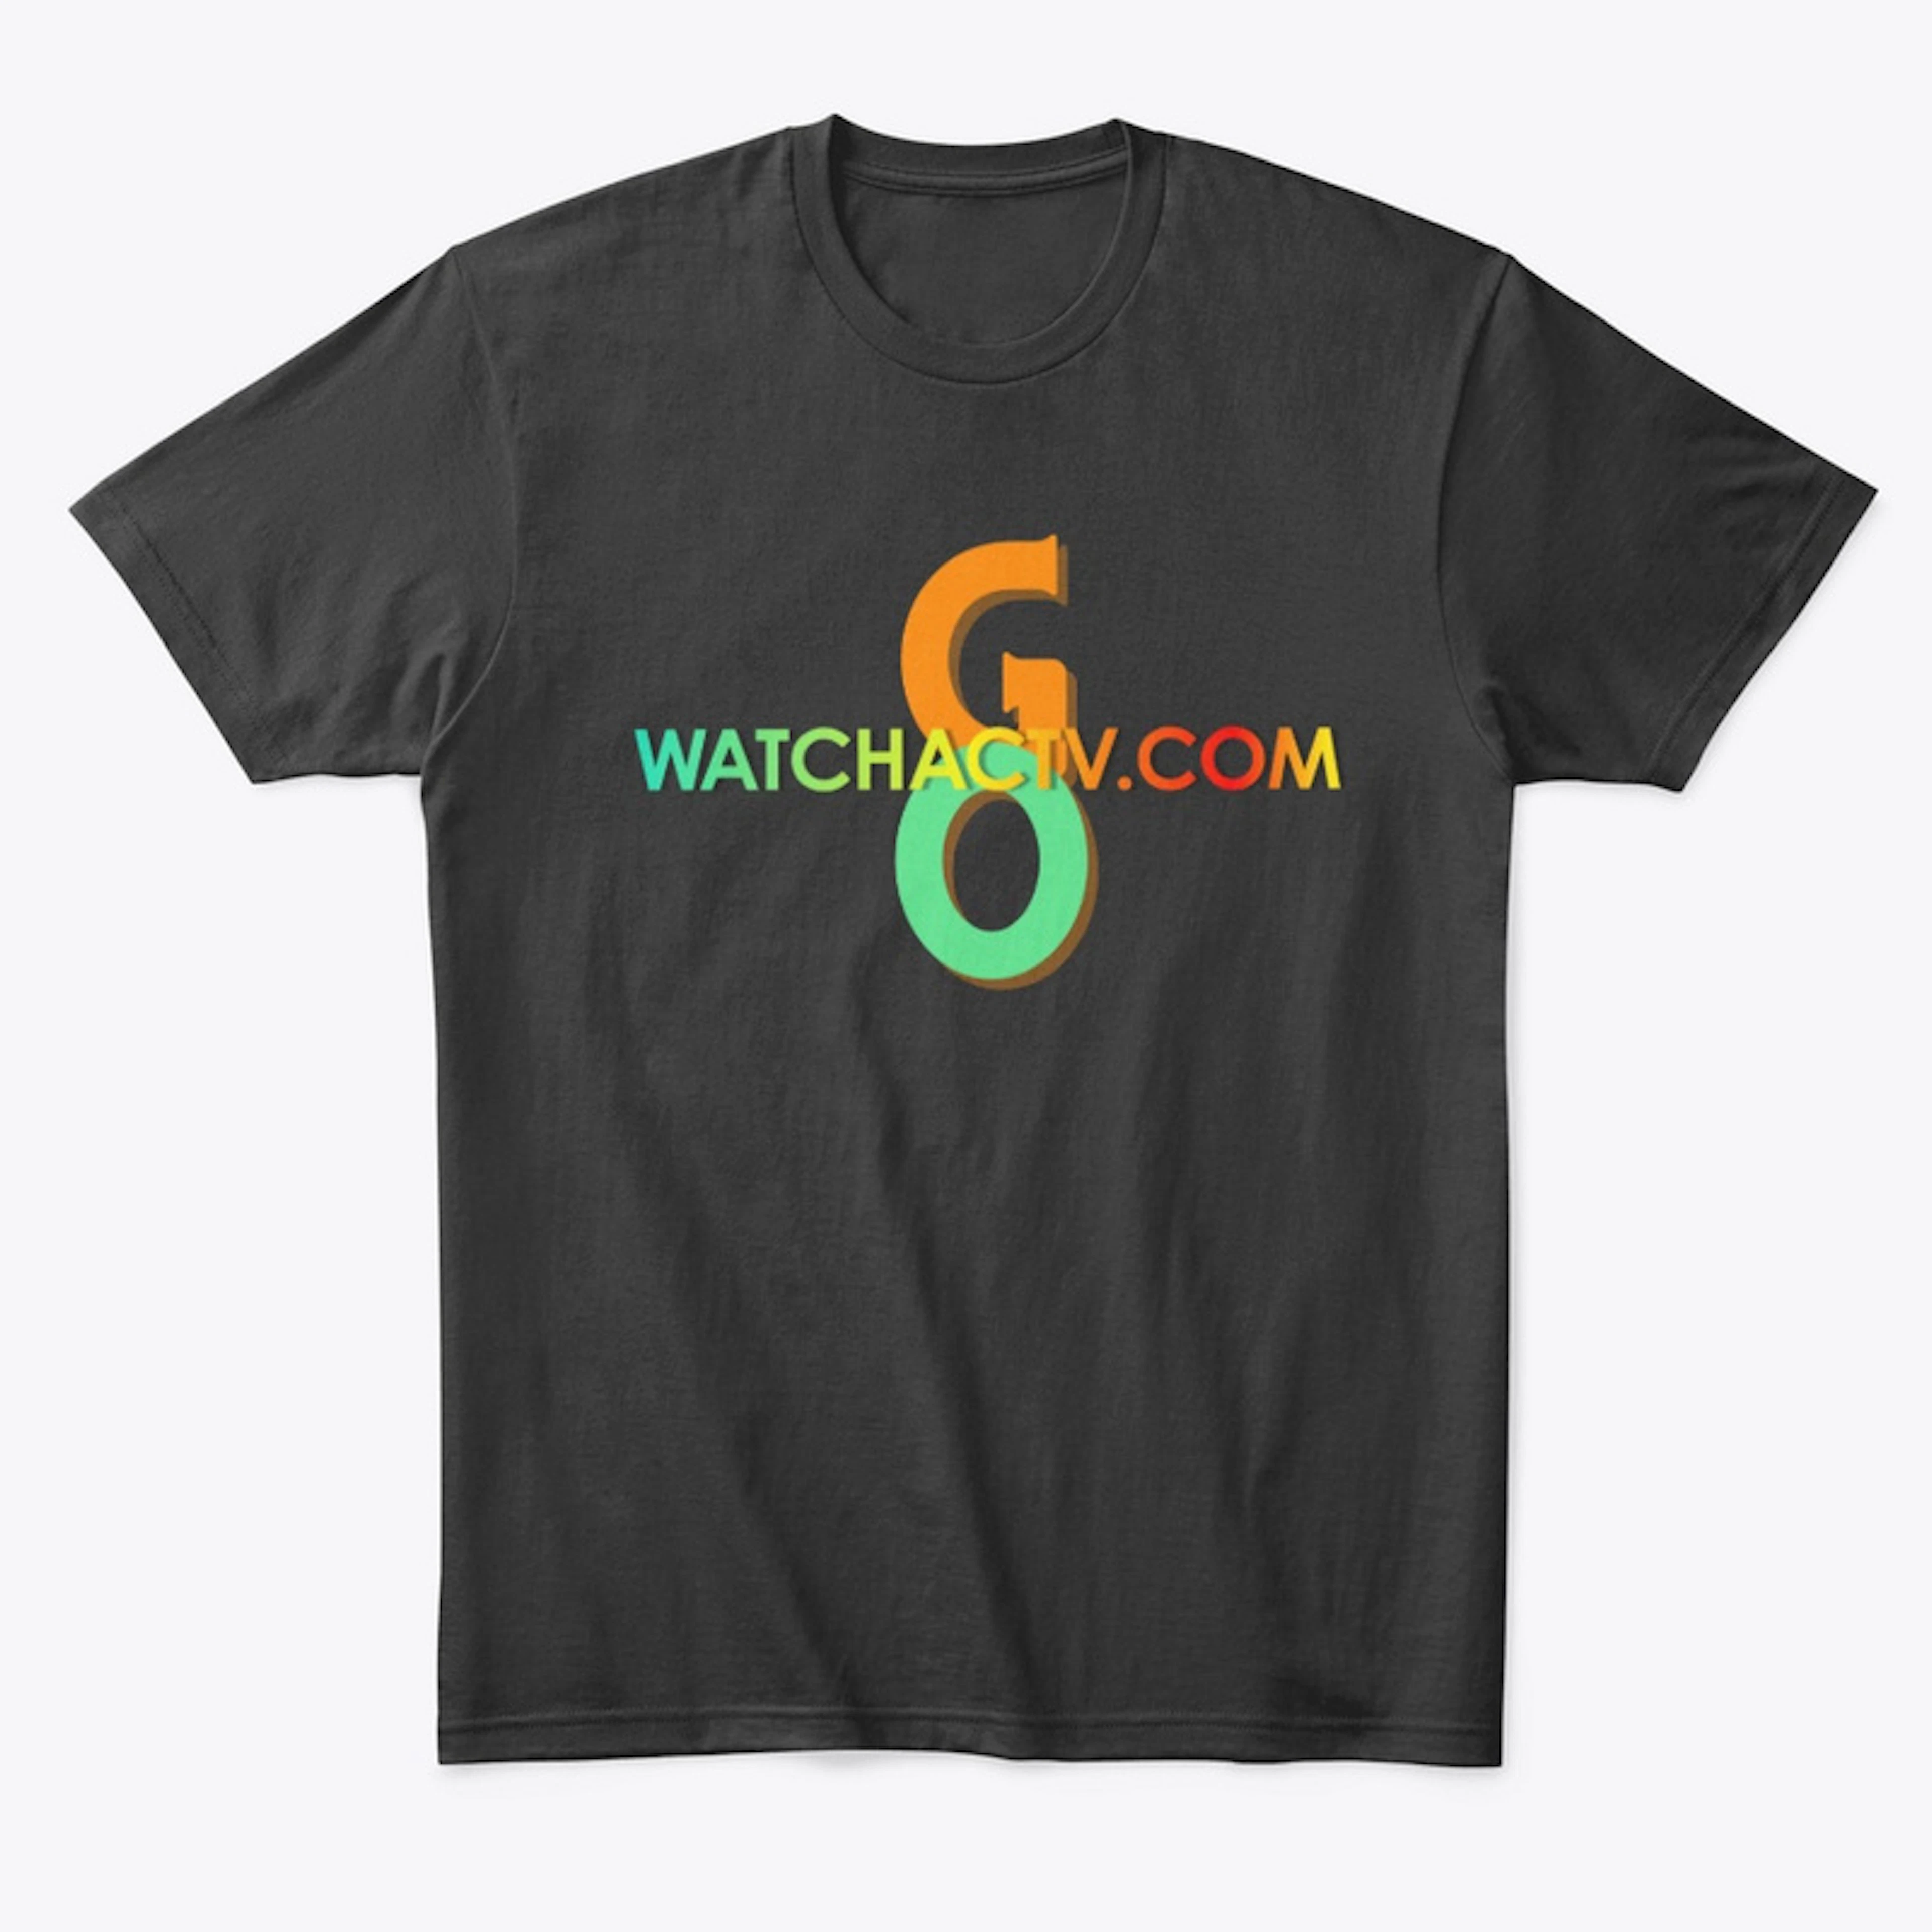 GO WATCHACTV.COM